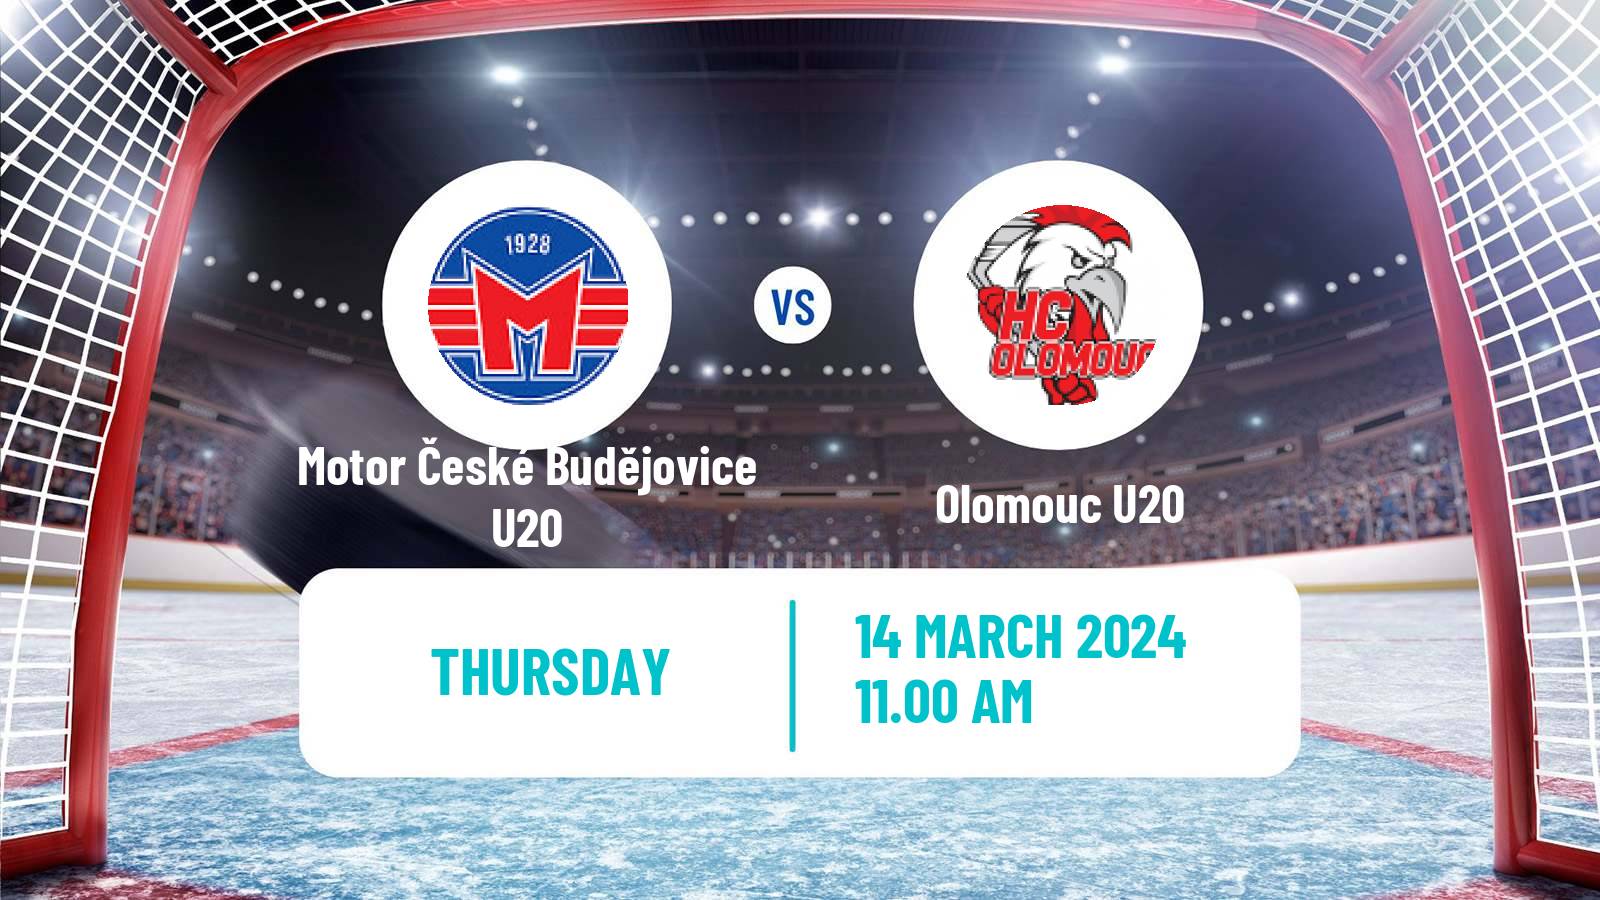 Hockey Czech ELJ Motor České Budějovice U20 - Olomouc U20